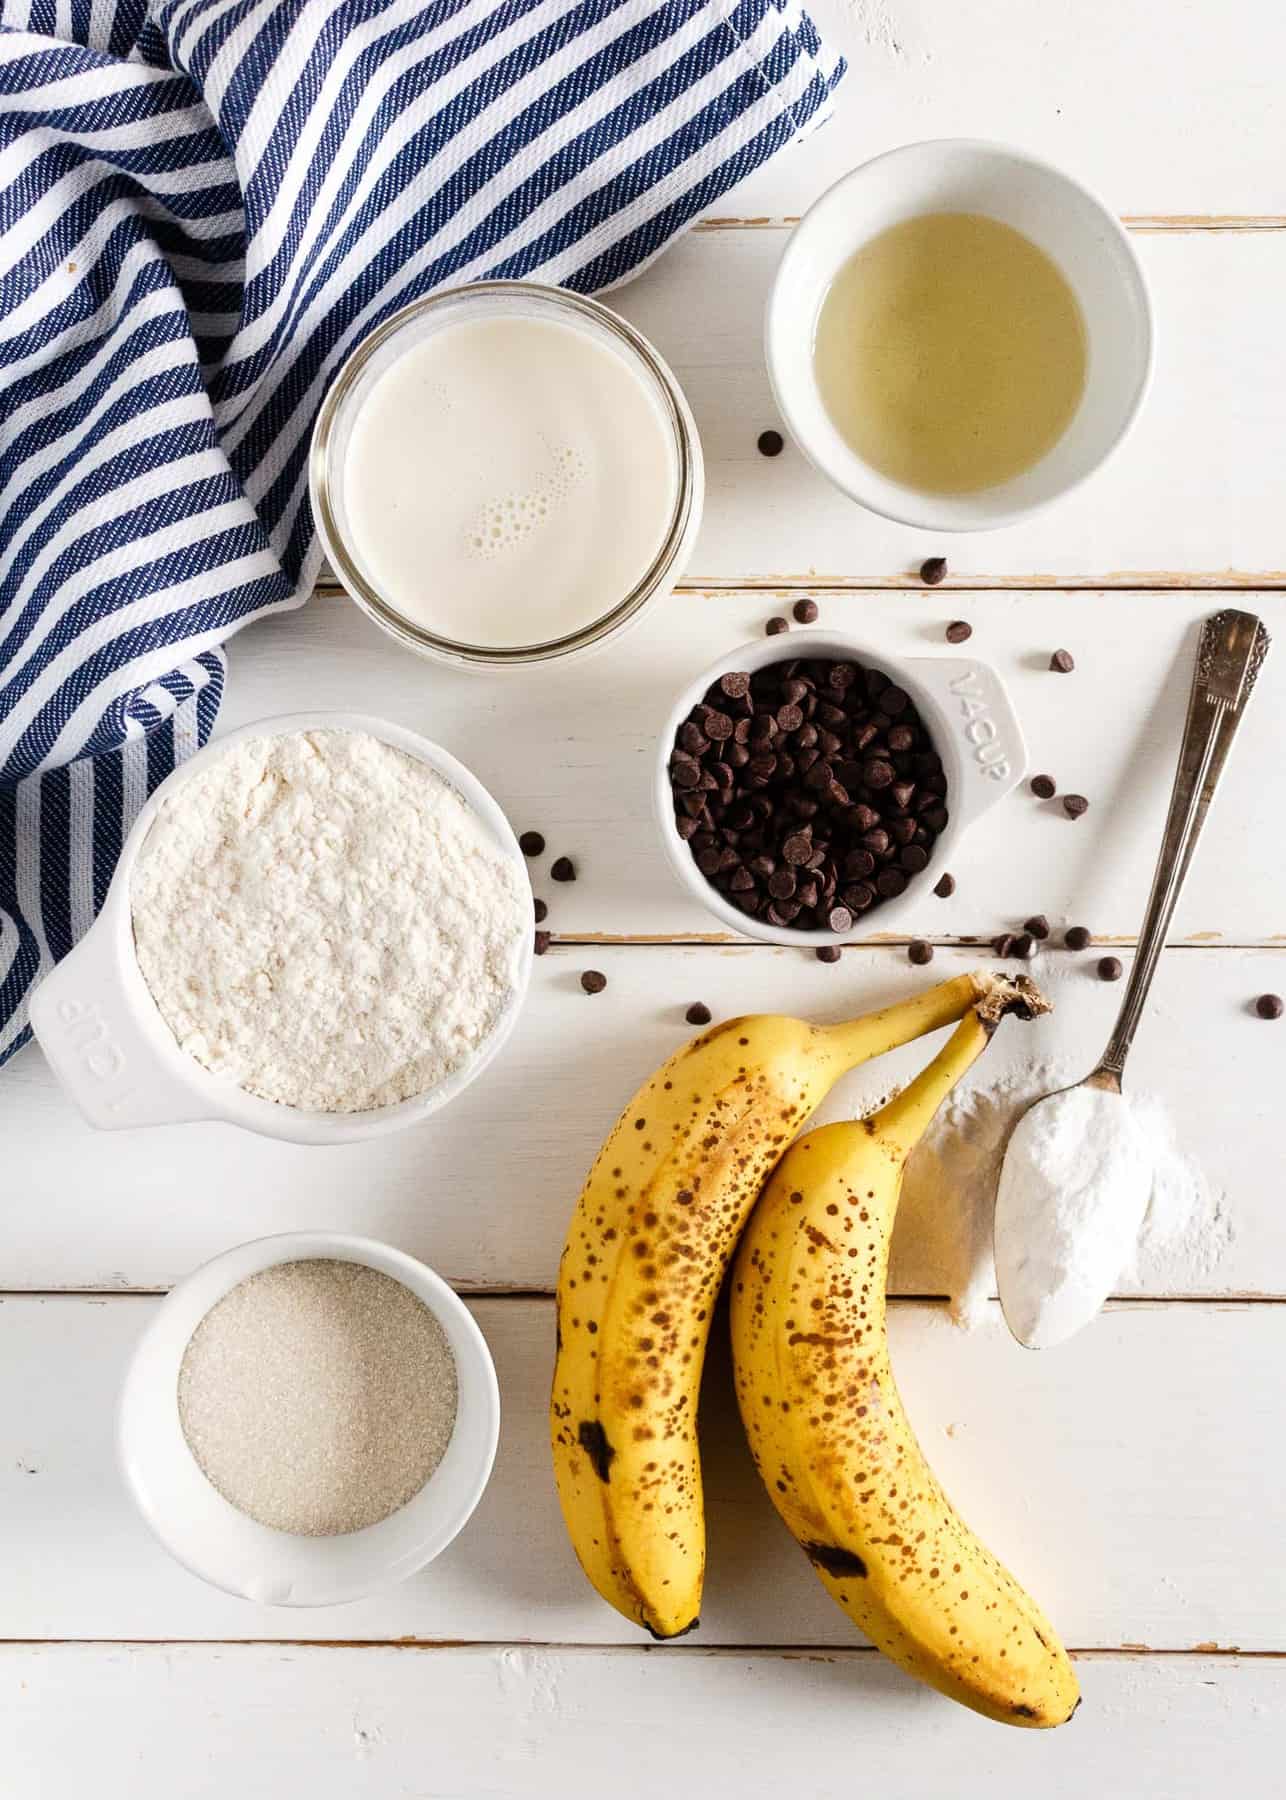 Ingredients for making vegan chocolate chip pancakes